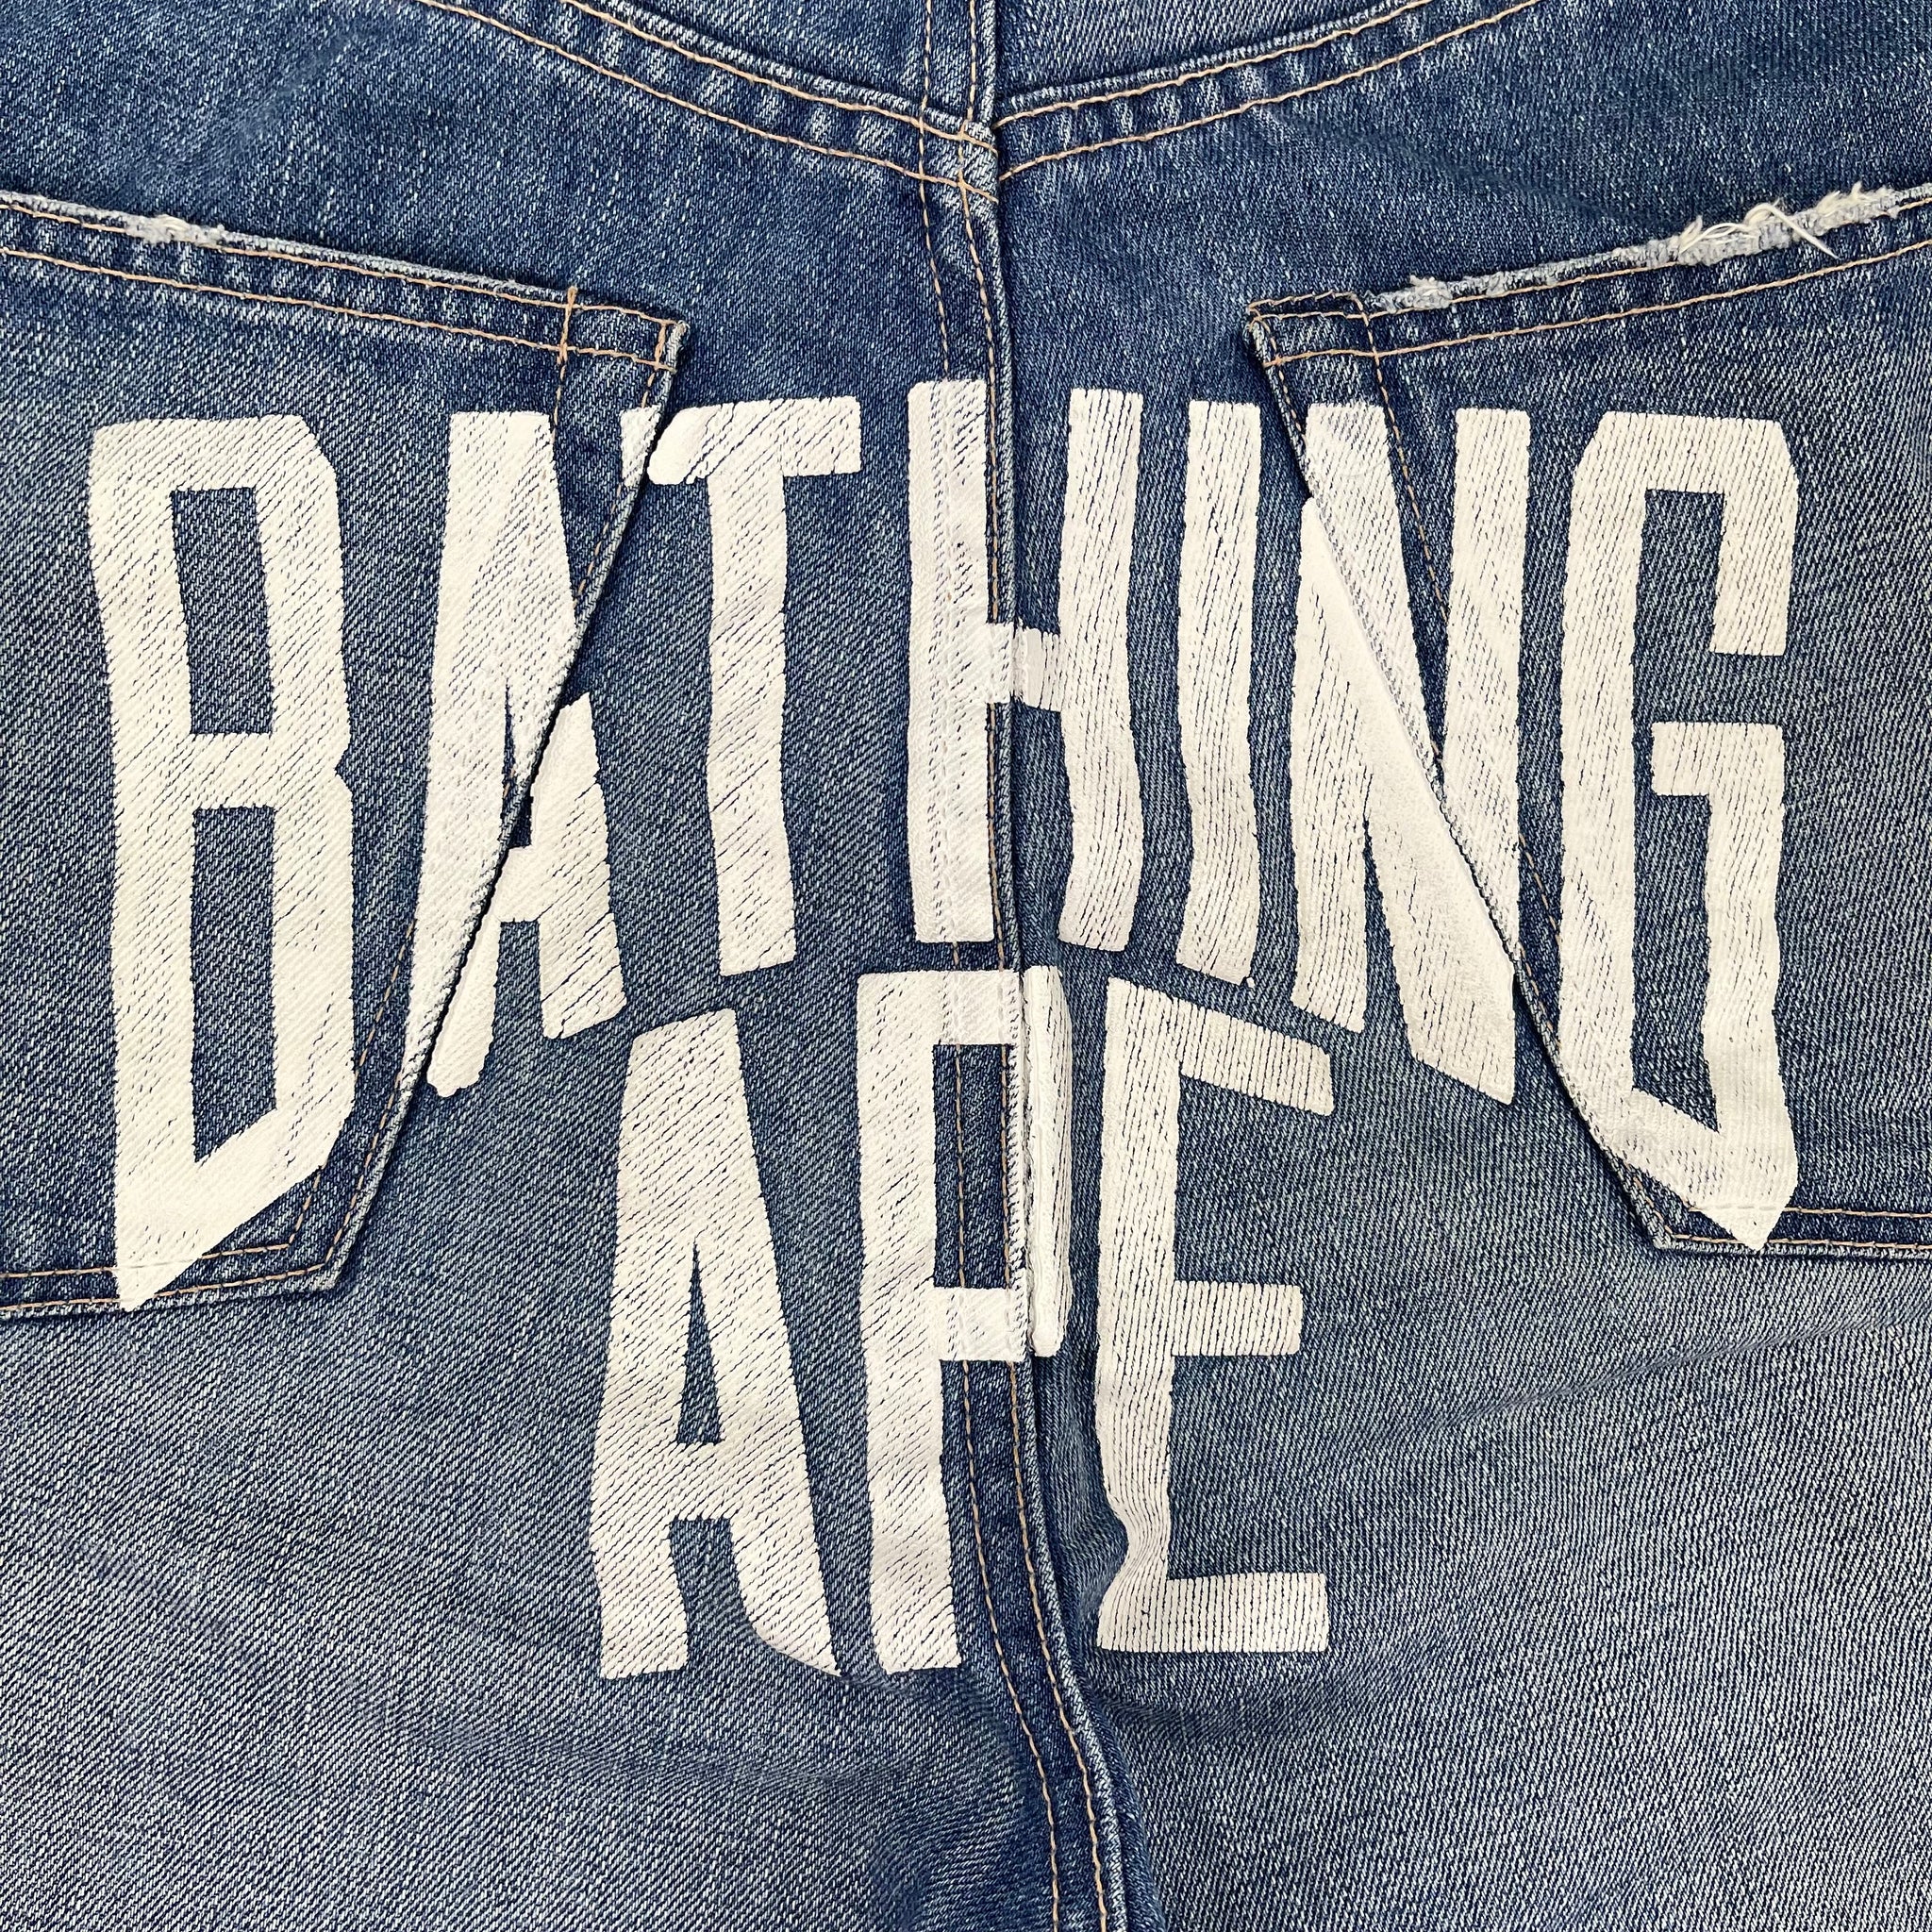 Bape 'Bathing Ape' Denim Shorts (W32)